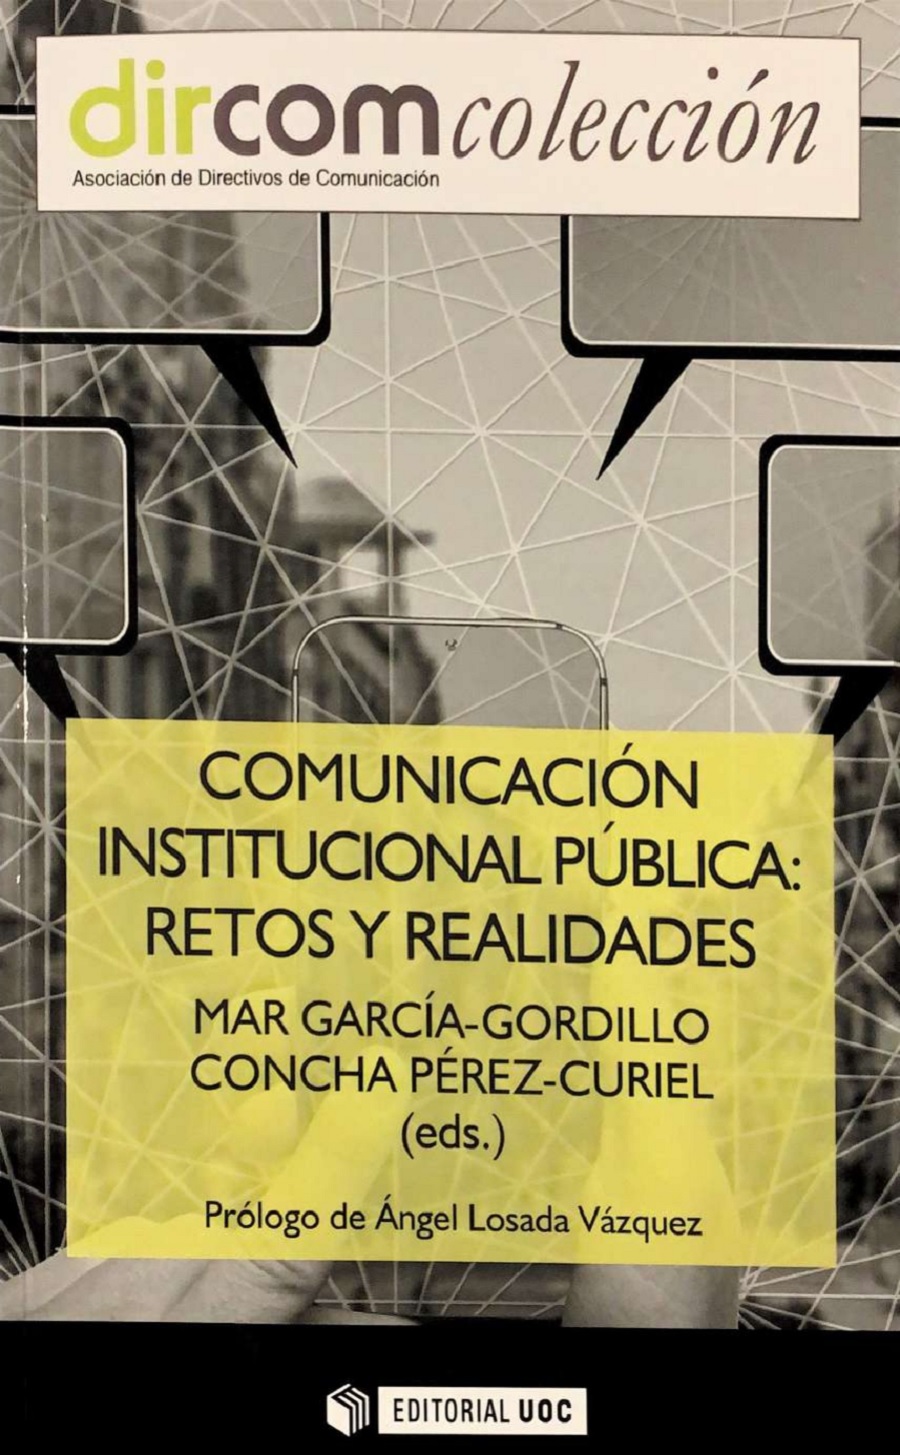 “Comunicación institucional pública: retos y realidades”